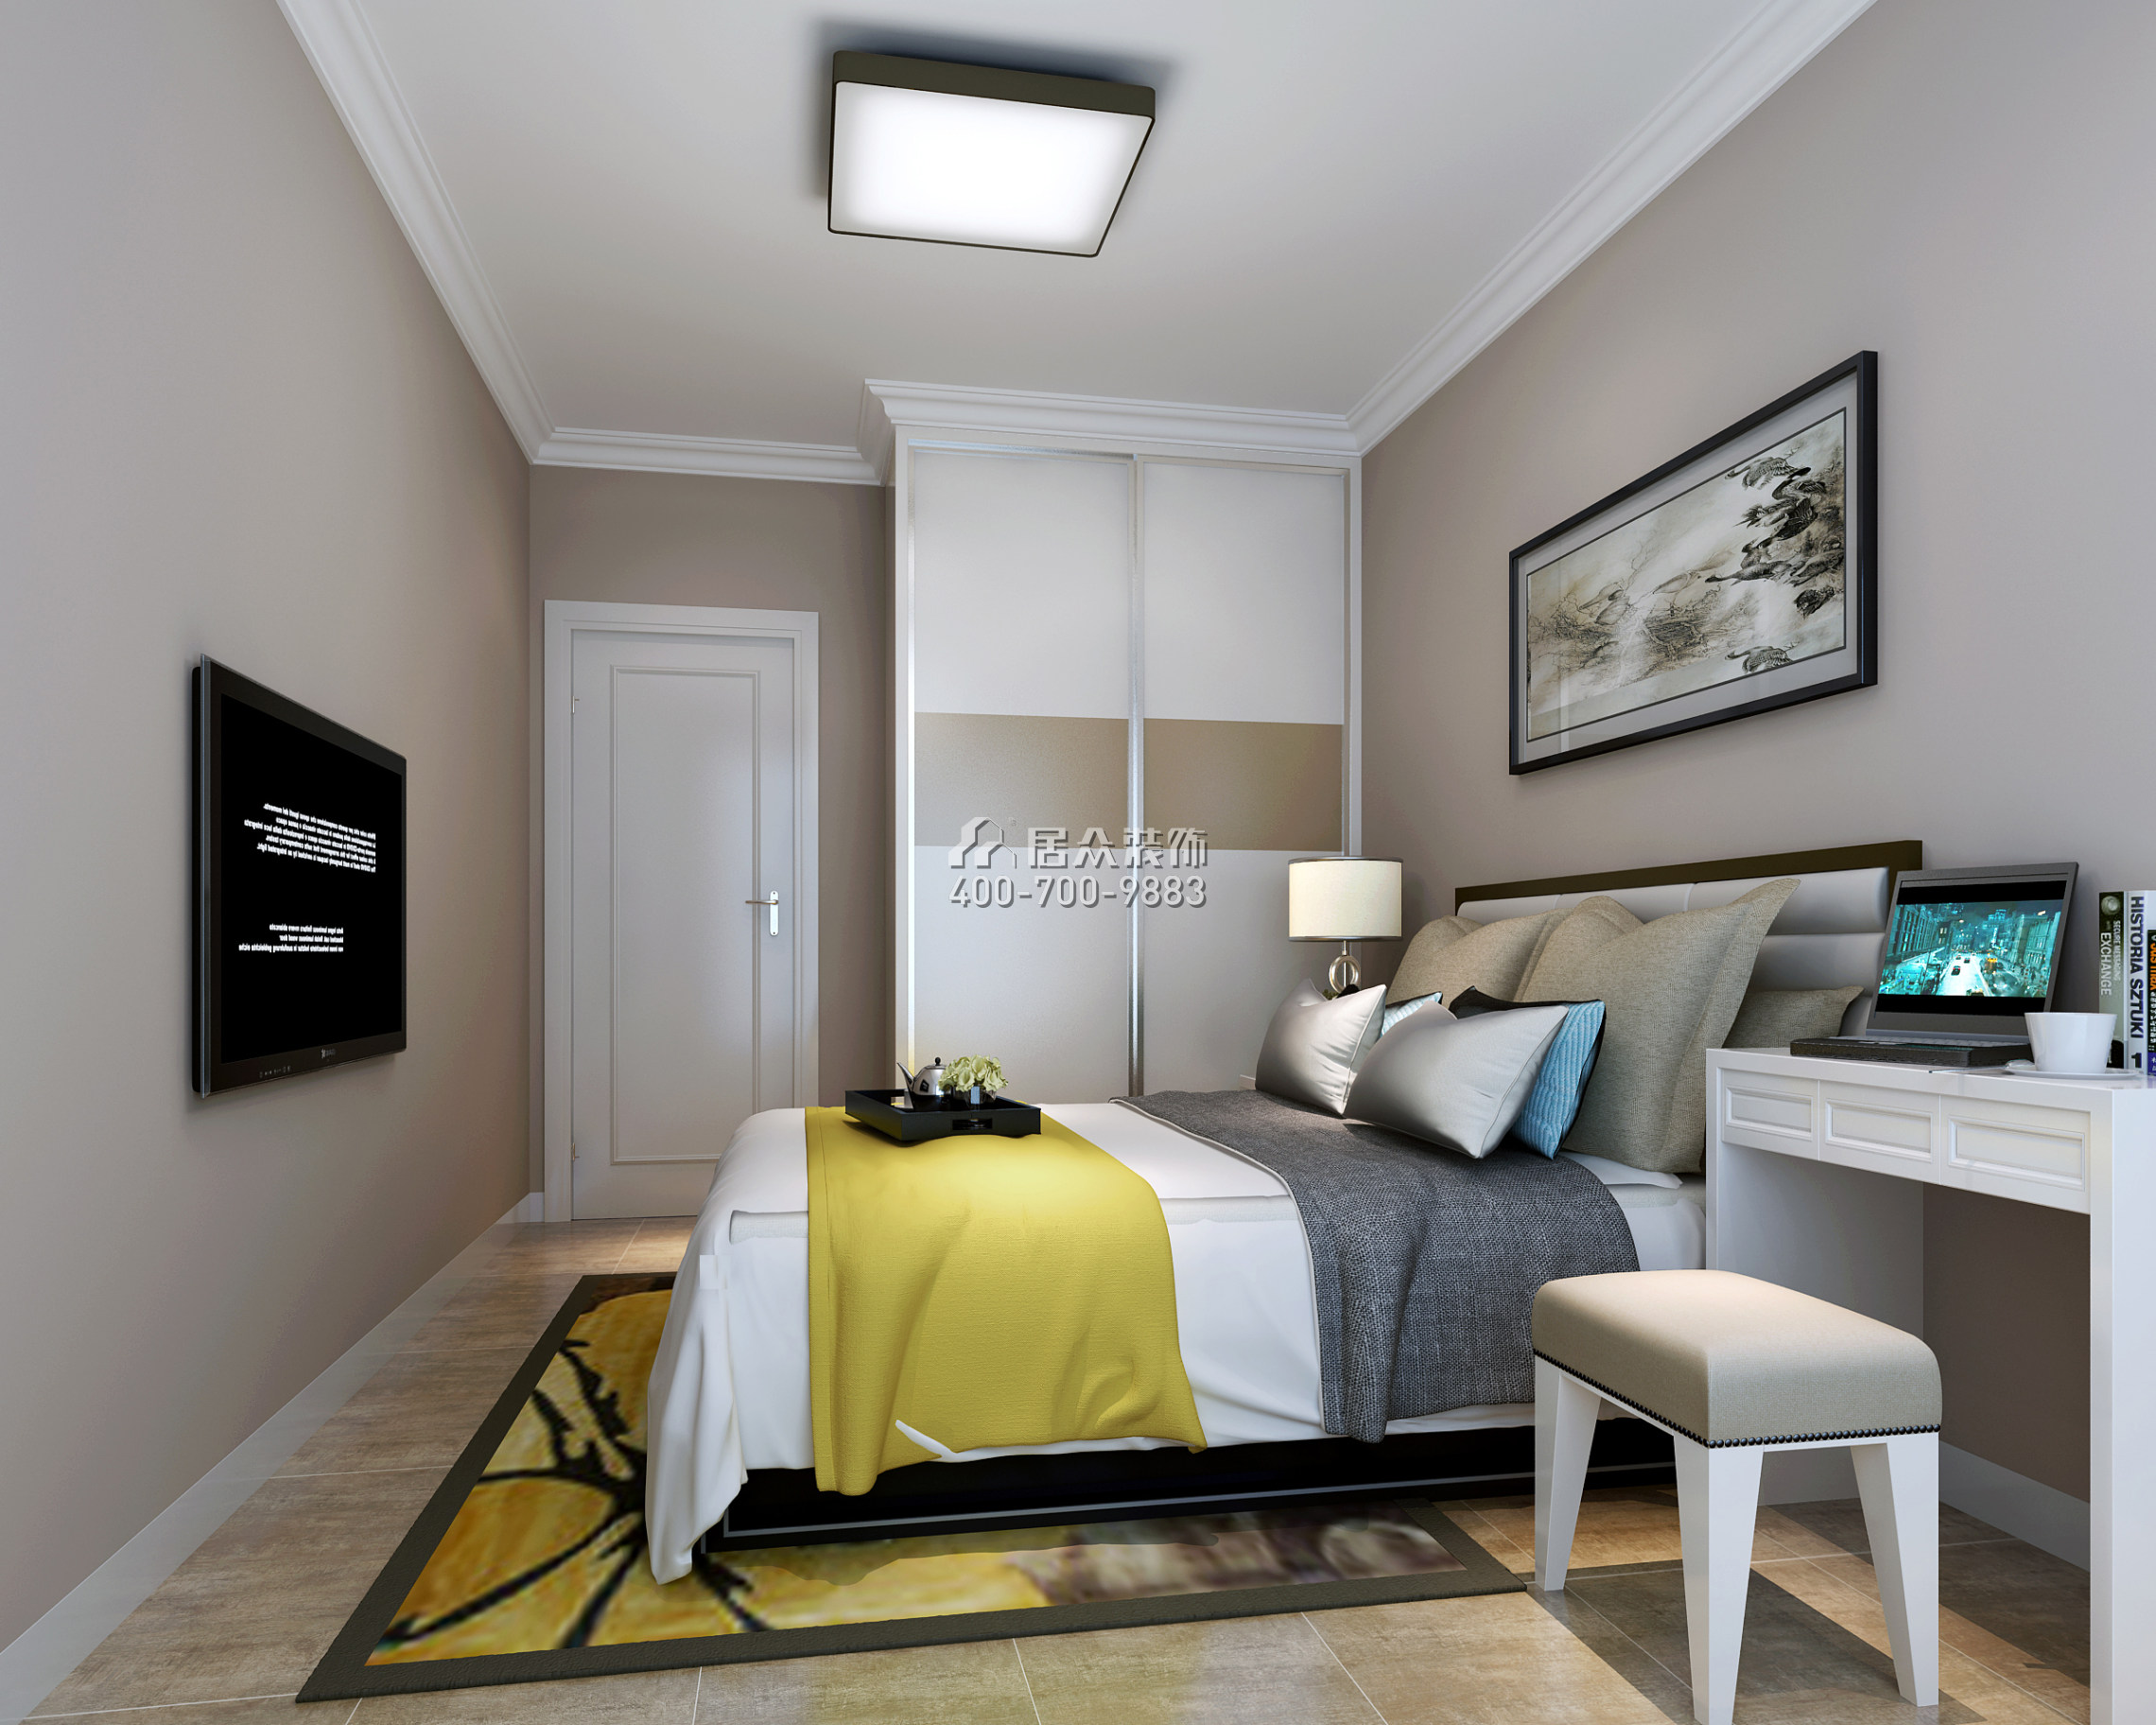 華盛·西薈城4期89平方米現代簡約風格平層戶型臥室裝修效果圖